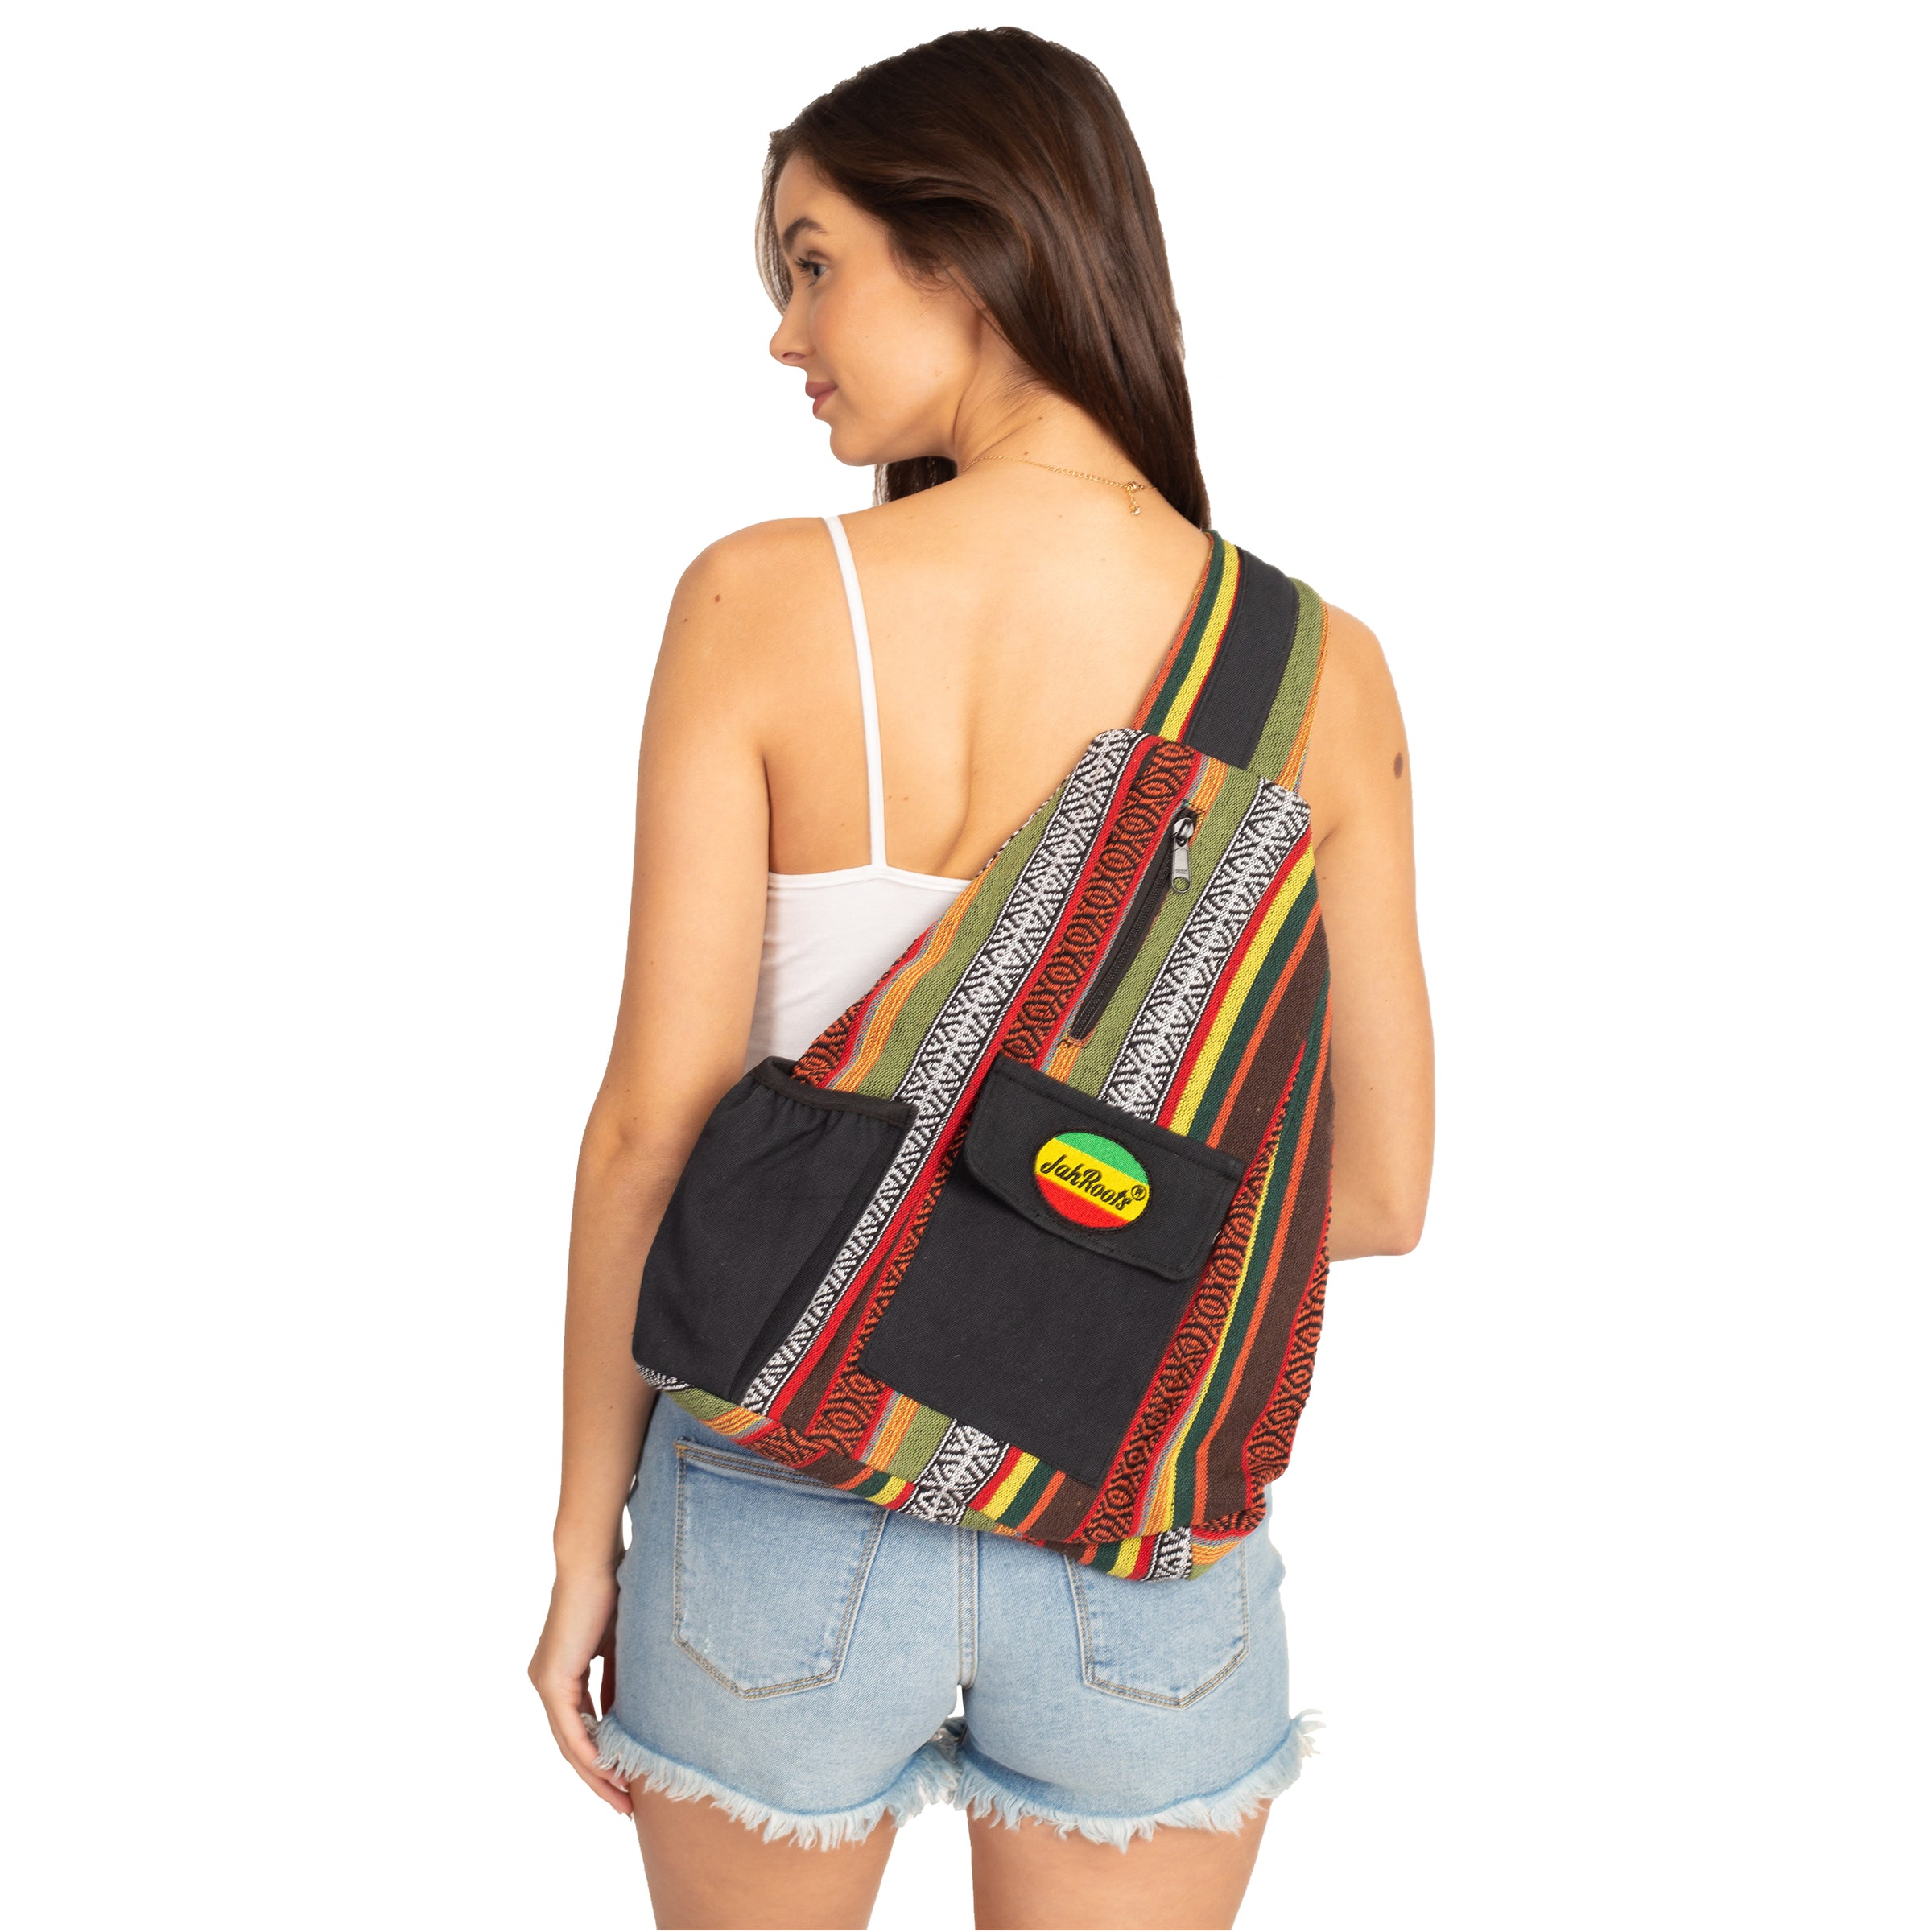 Rasta Stripe Crossbody Sling Backpack